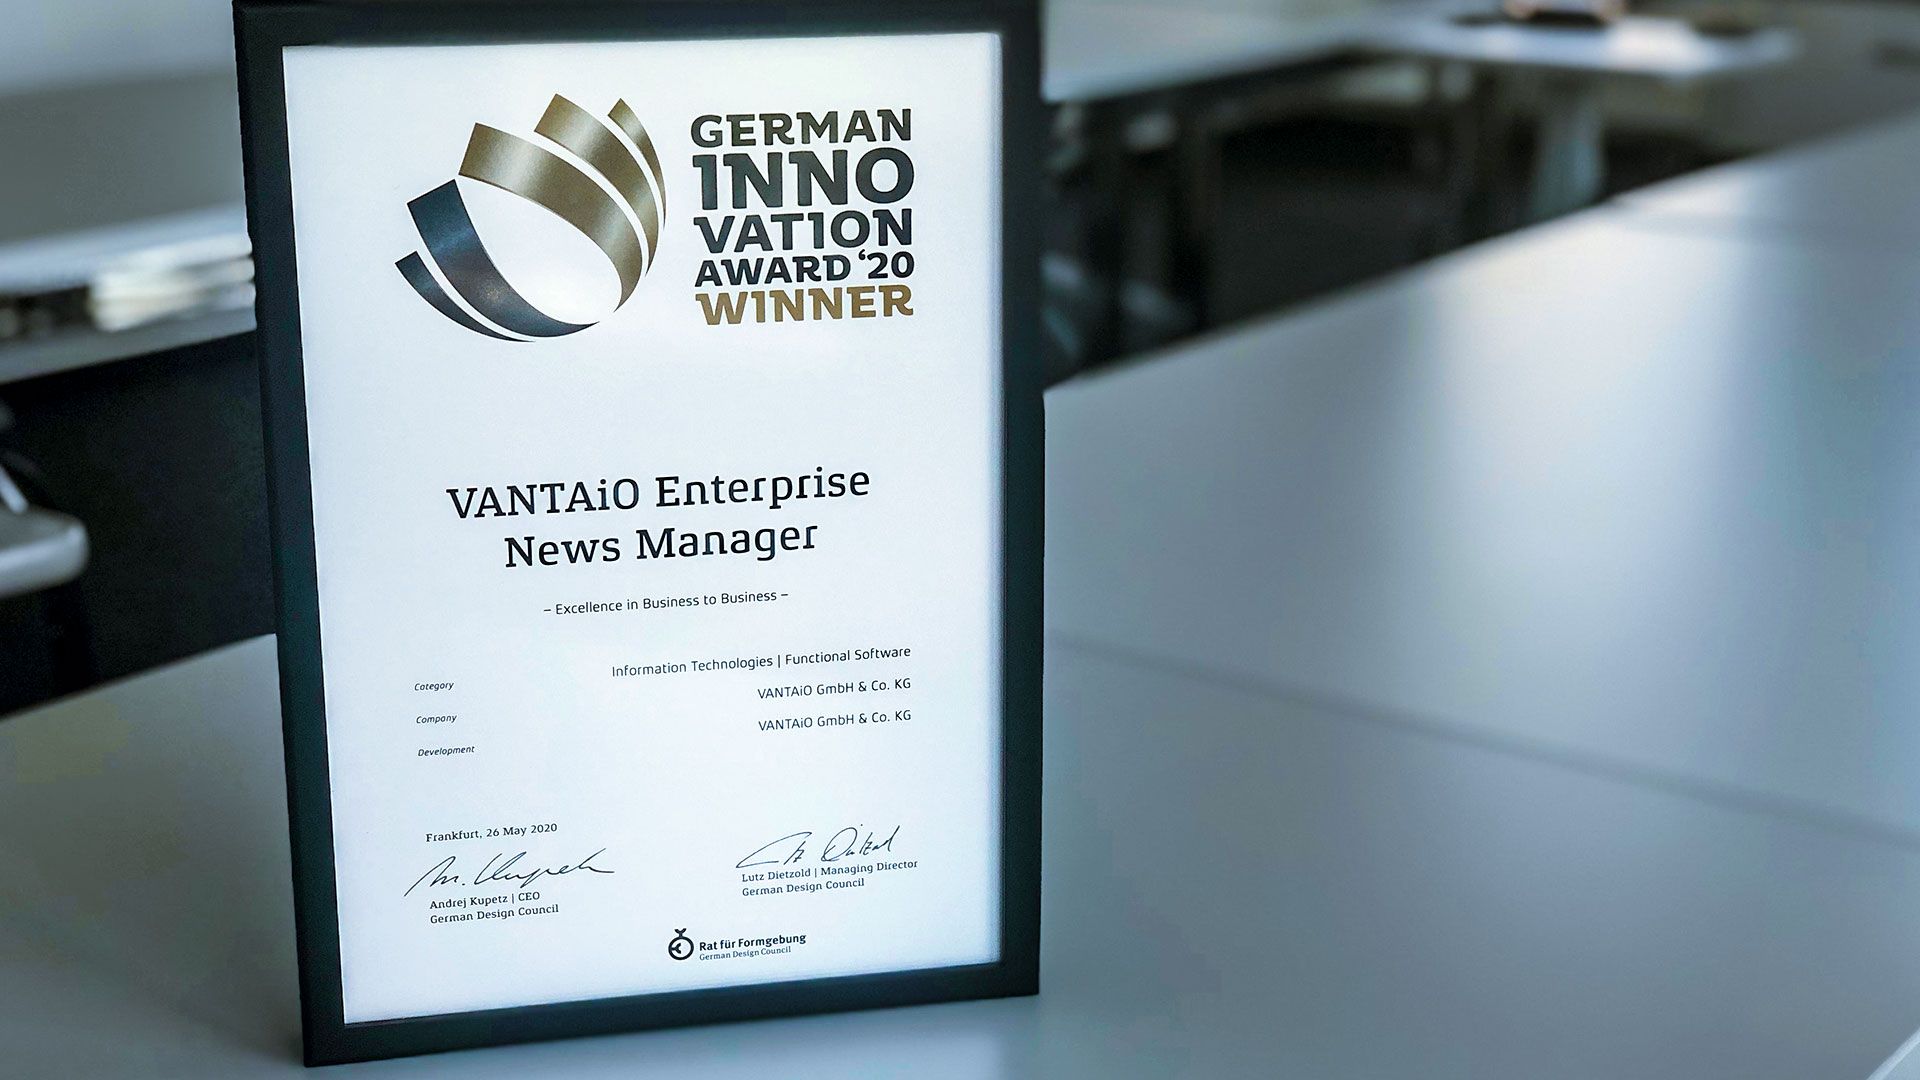 German Innovation Award 2020